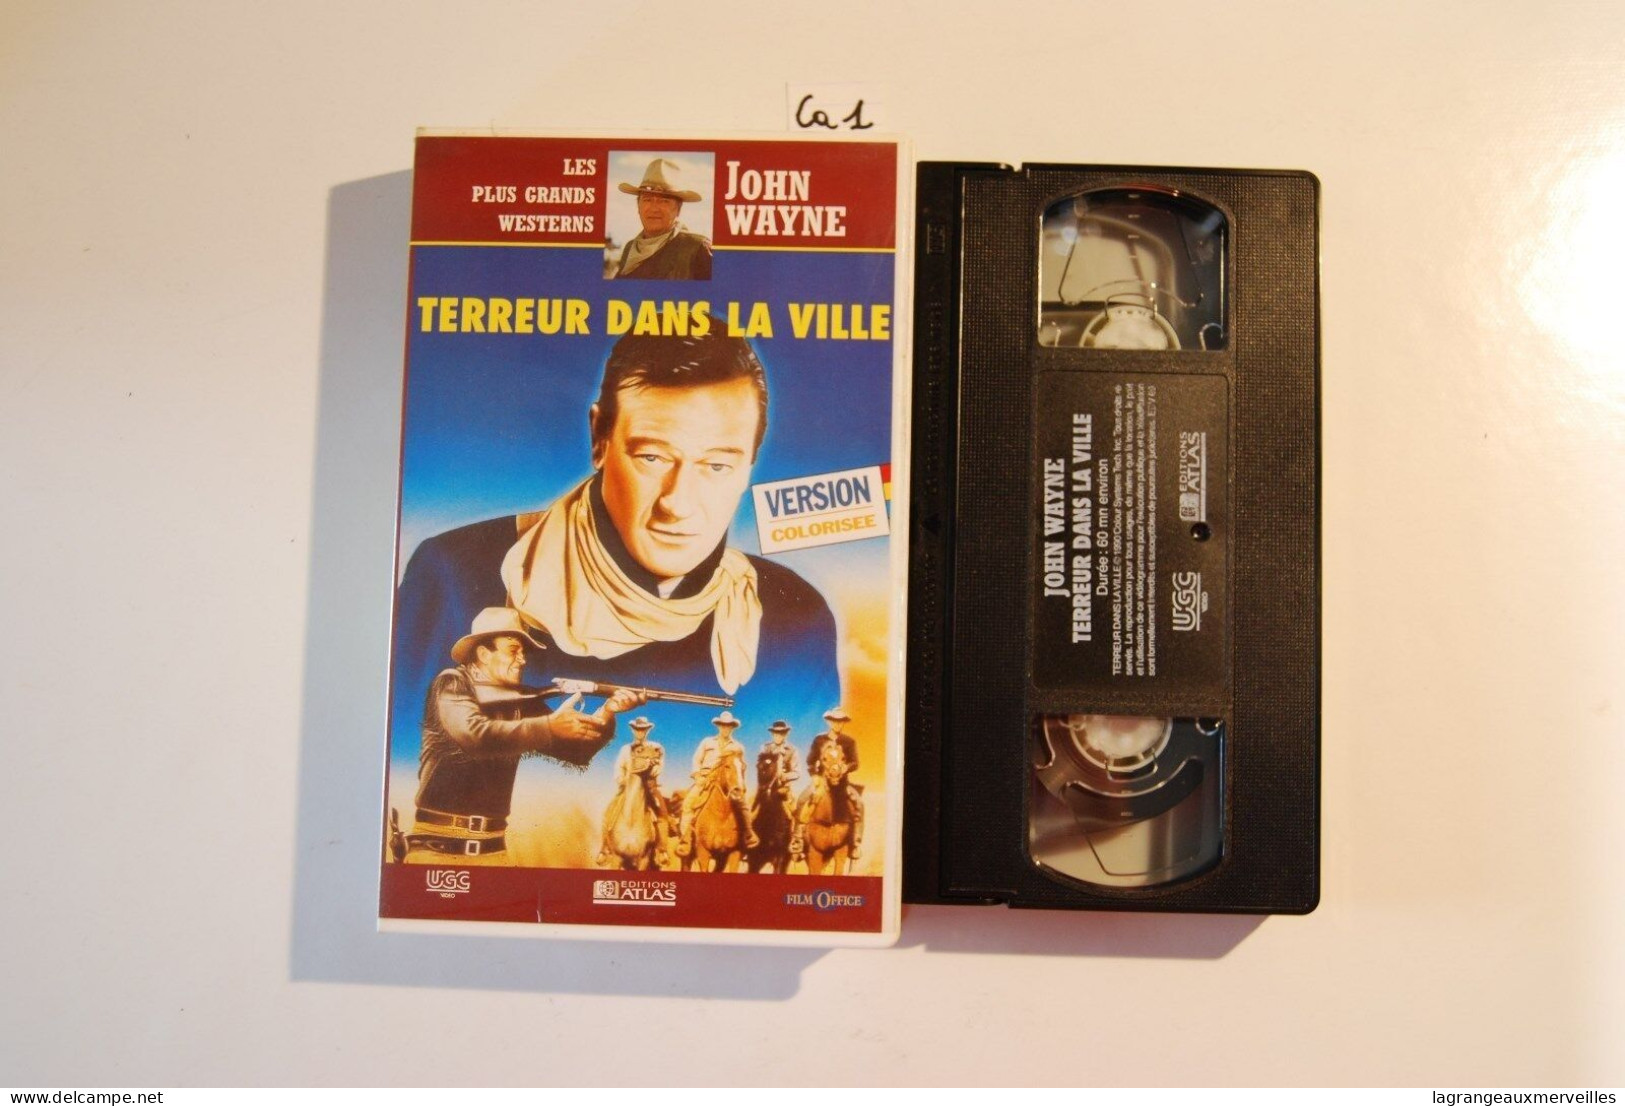 CA1 Cassette Vidéo VHS JOHN WAYNE TERREUR DANS LA VILLE - Western/ Cowboy